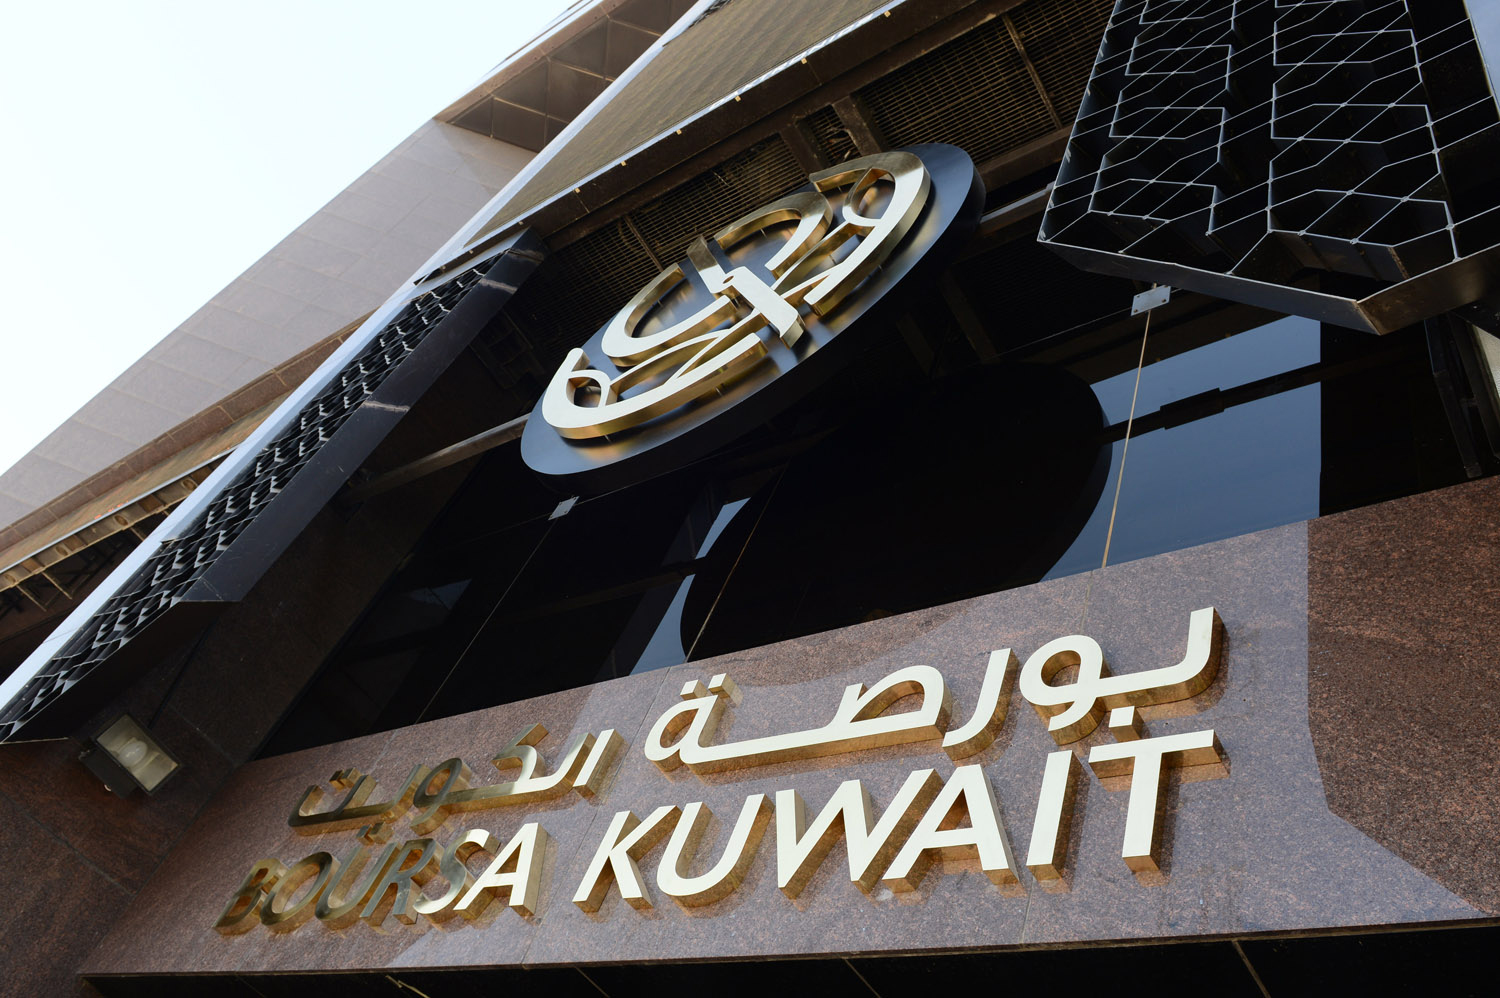 بورصة الكويت تغلق تعاملاتها على ارتفاع المؤشر العام 17ر52 نقطة ليبلغ 06ر7661 نقطة بنسبة ارتفاع 69ر0 في المئة وبقيمة 8ر88 مليون دينار                                                                                                                      